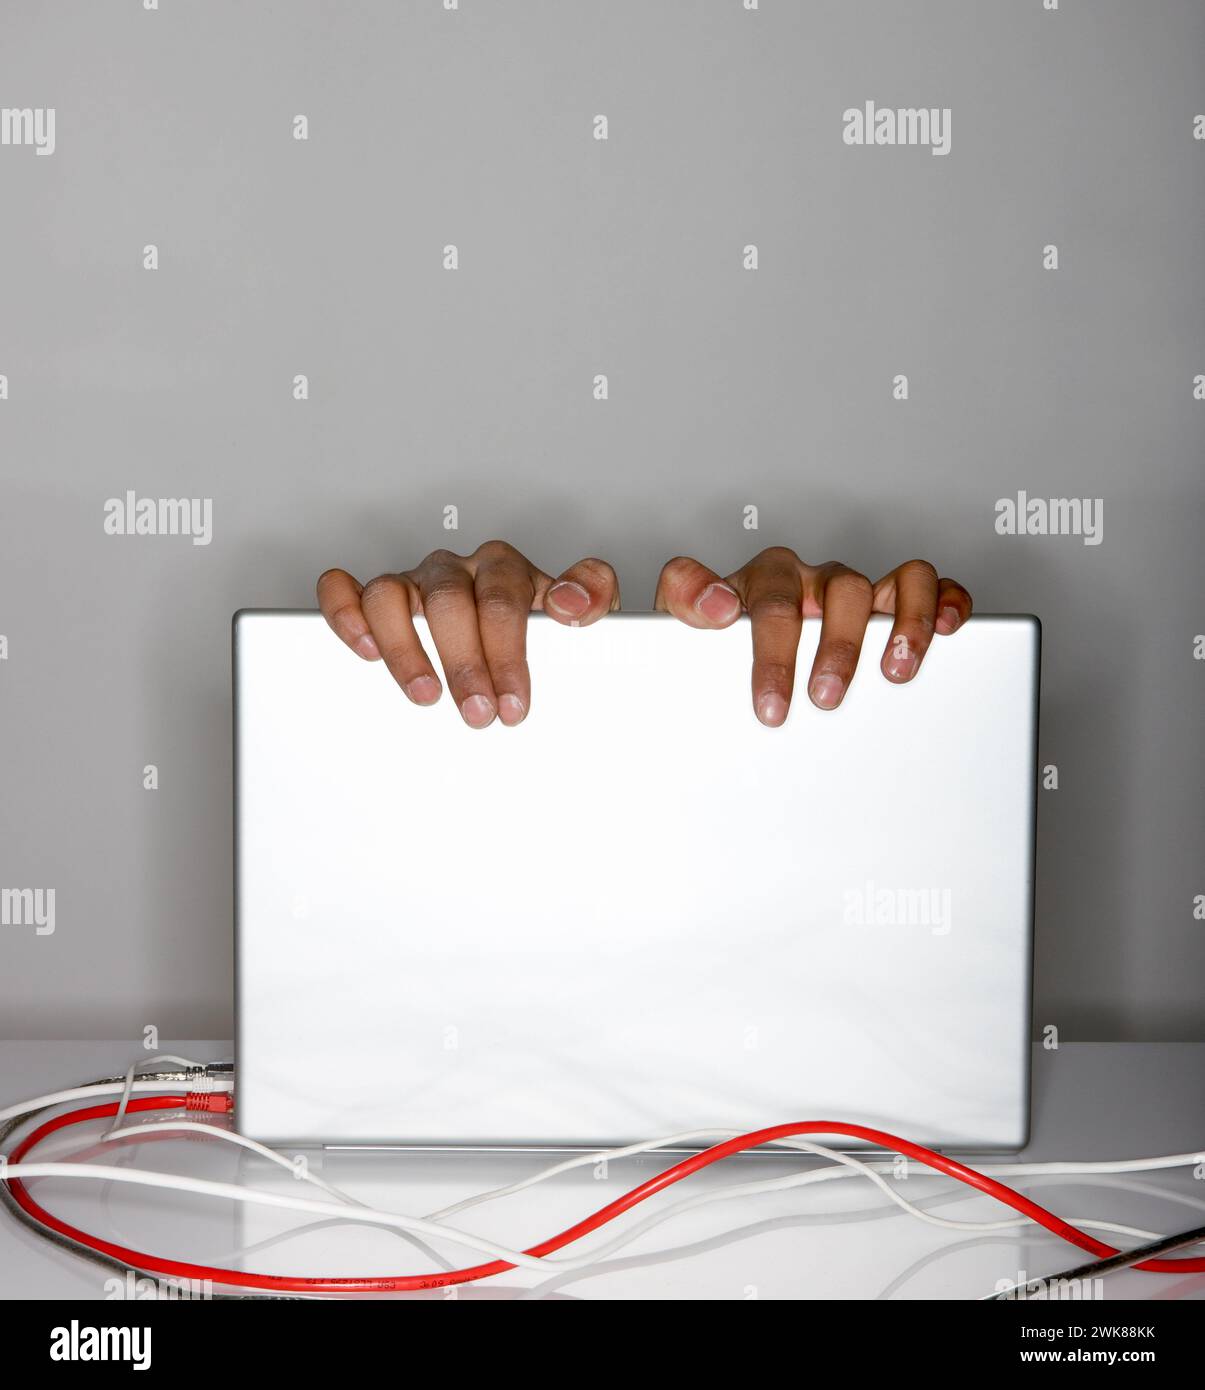 Finger hängen über dem Laptop-Bildschirm, rote und graue Kabel verlegen sich Stockfoto